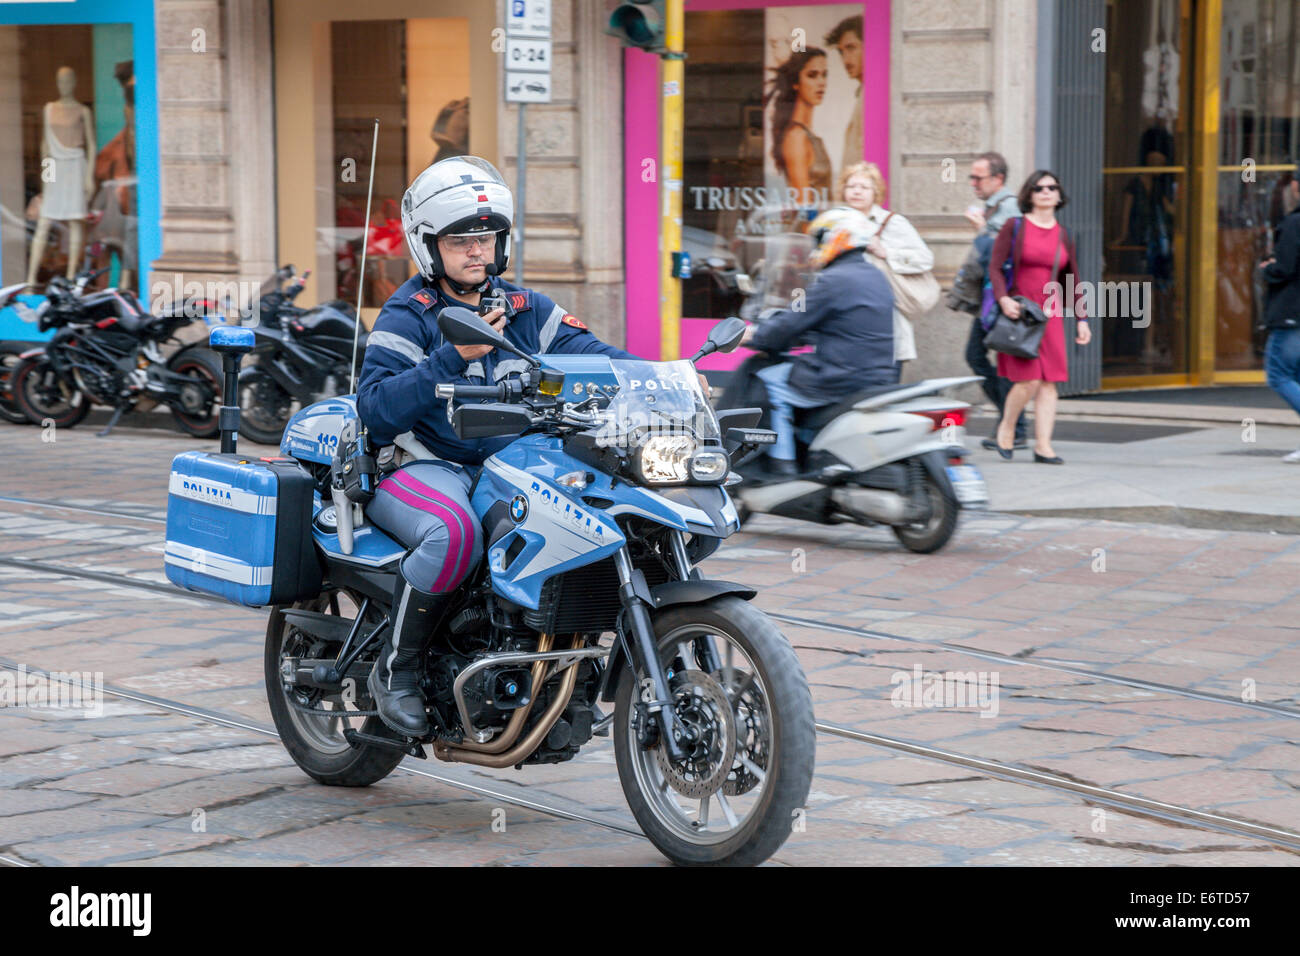 Polizia italienne policier à moto au téléphone pendant la conduite moto Banque D'Images